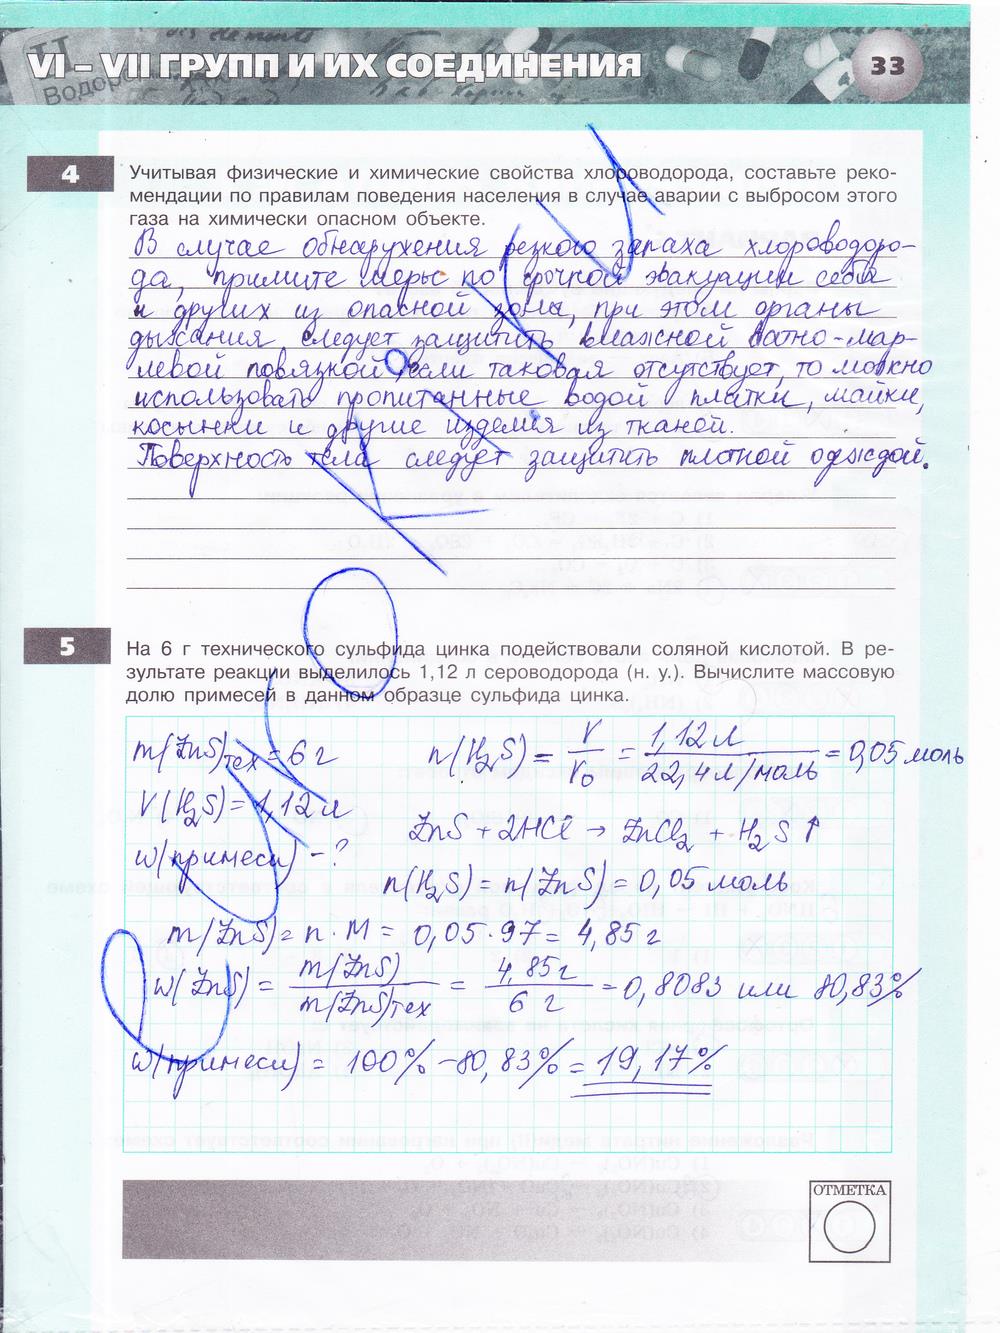 гдз 9 класс тетрадь-экзаменатор страница 33 химия Бобылева, Бирюлина